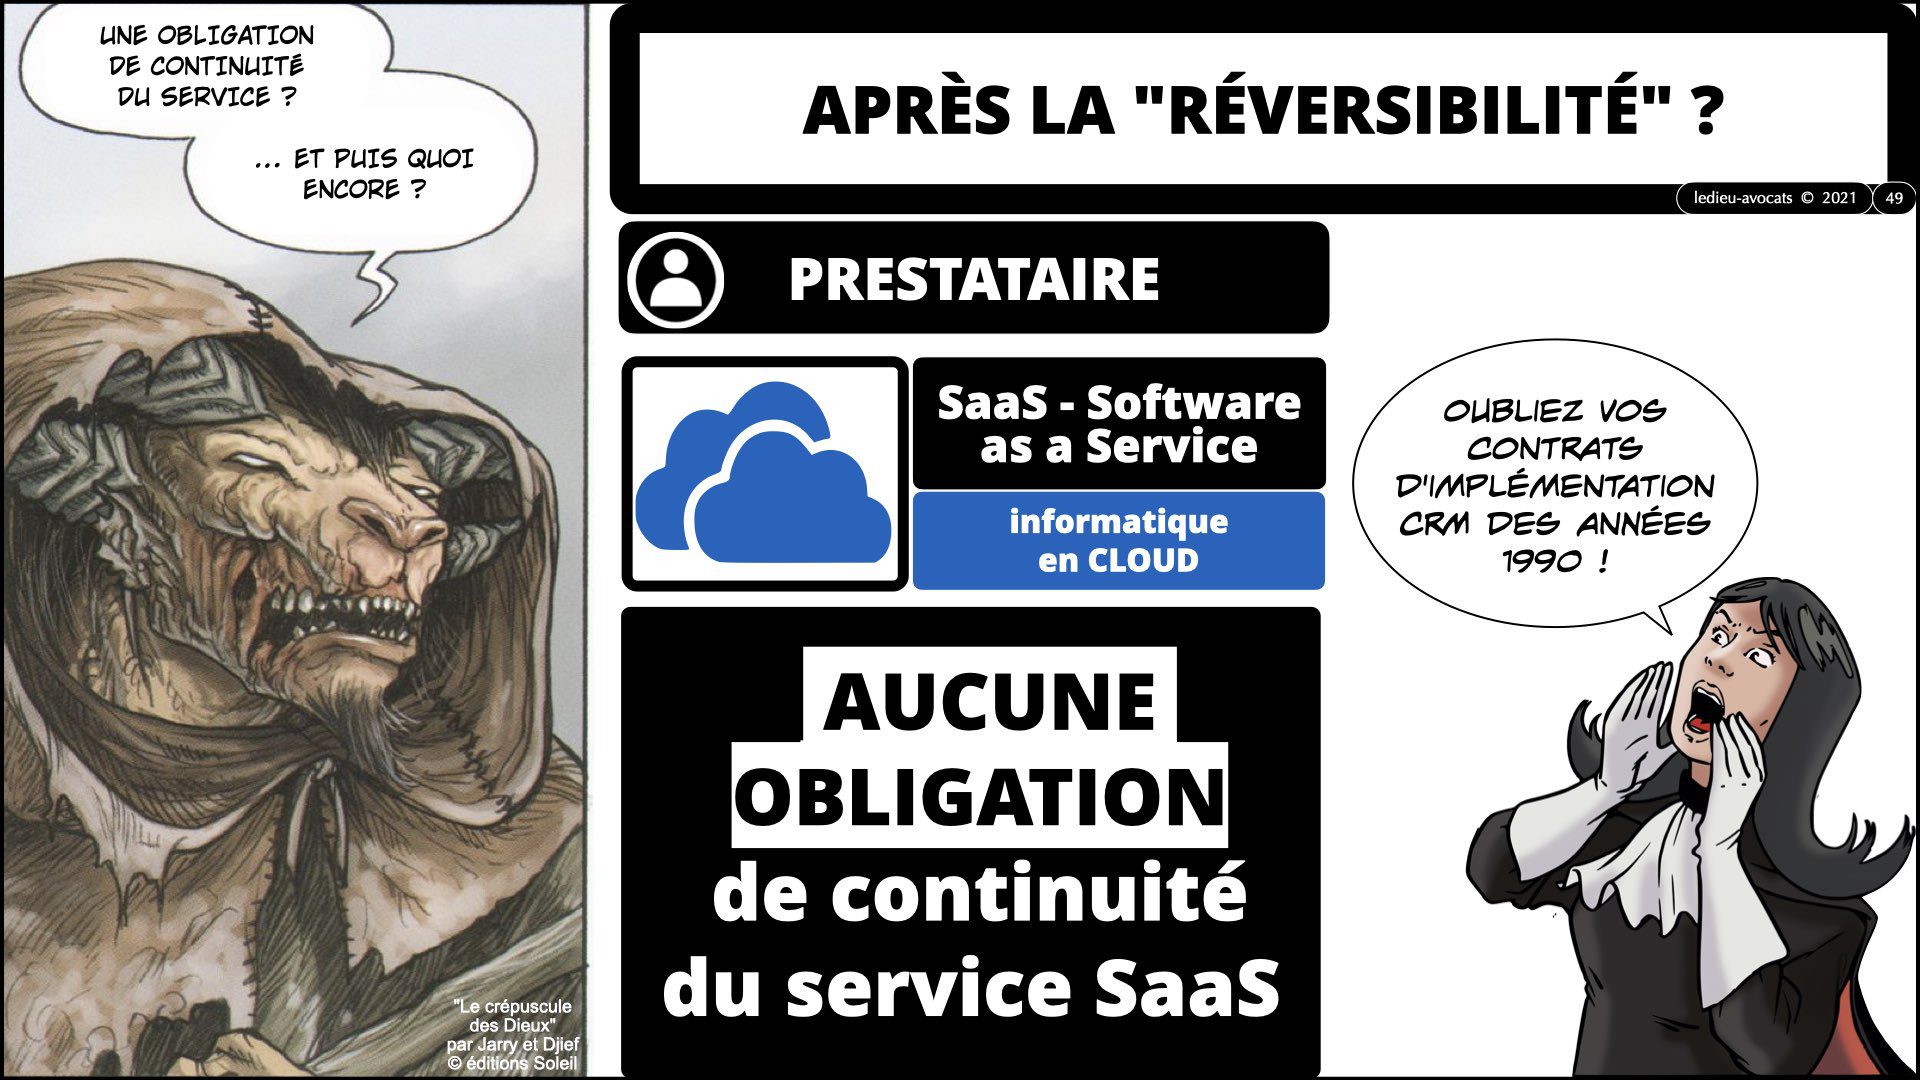 343 service LOGICIEL SaaS Software-as-a-Service cloud computing © Ledieu-Avocats technique droit numerique 30-08-2021.049